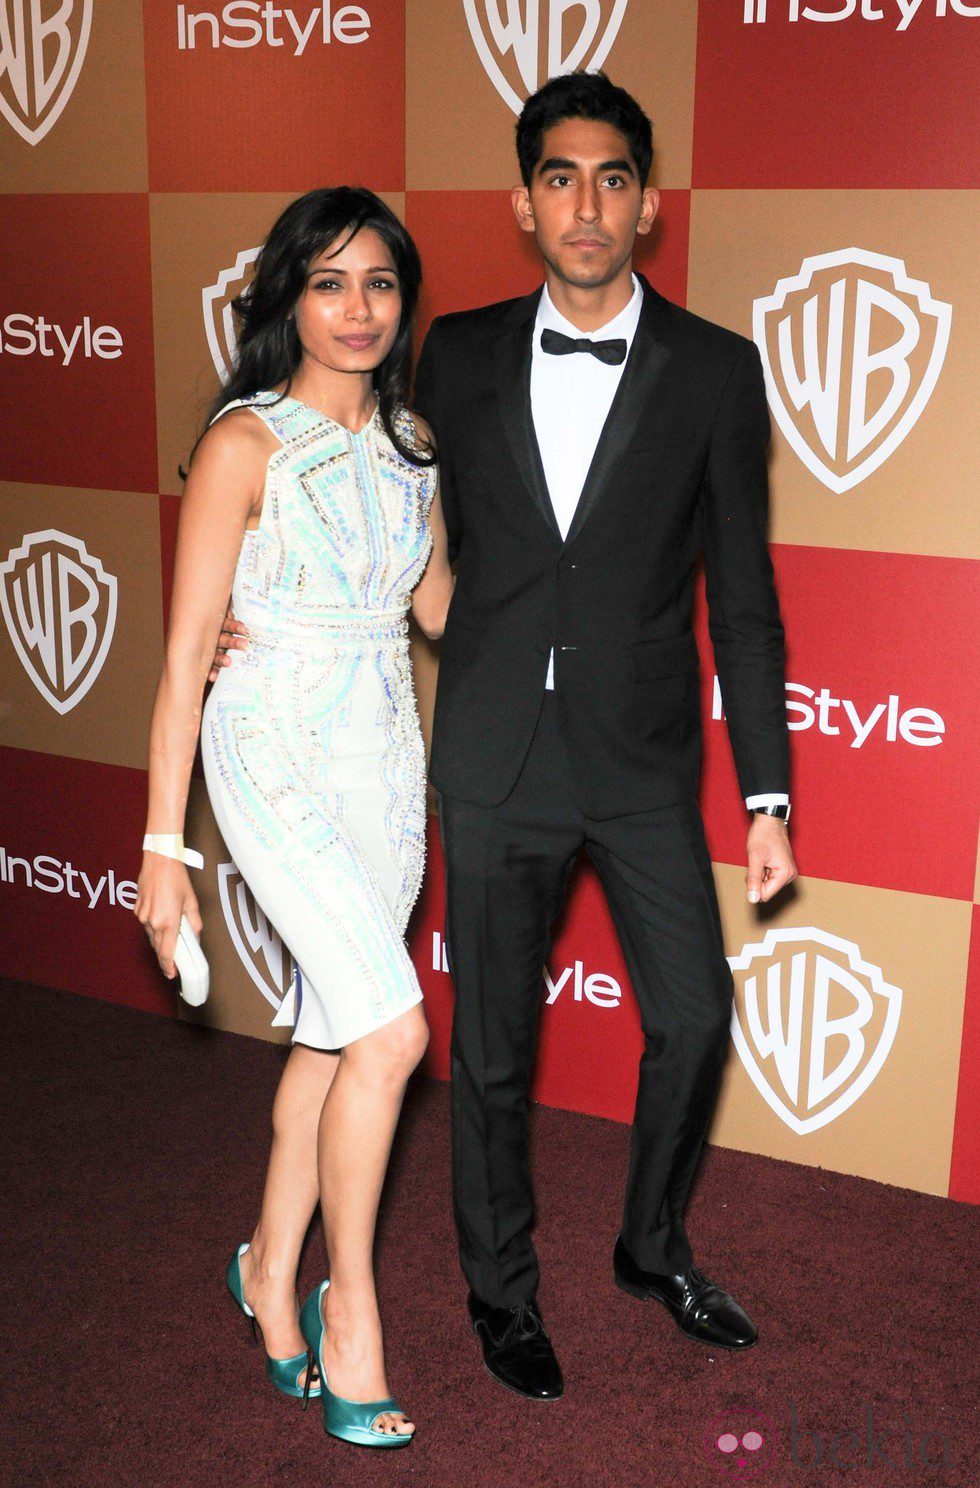 Freida Pinto y Dev Patel en la fiesta InStyle tras los Globos de Oro 2013